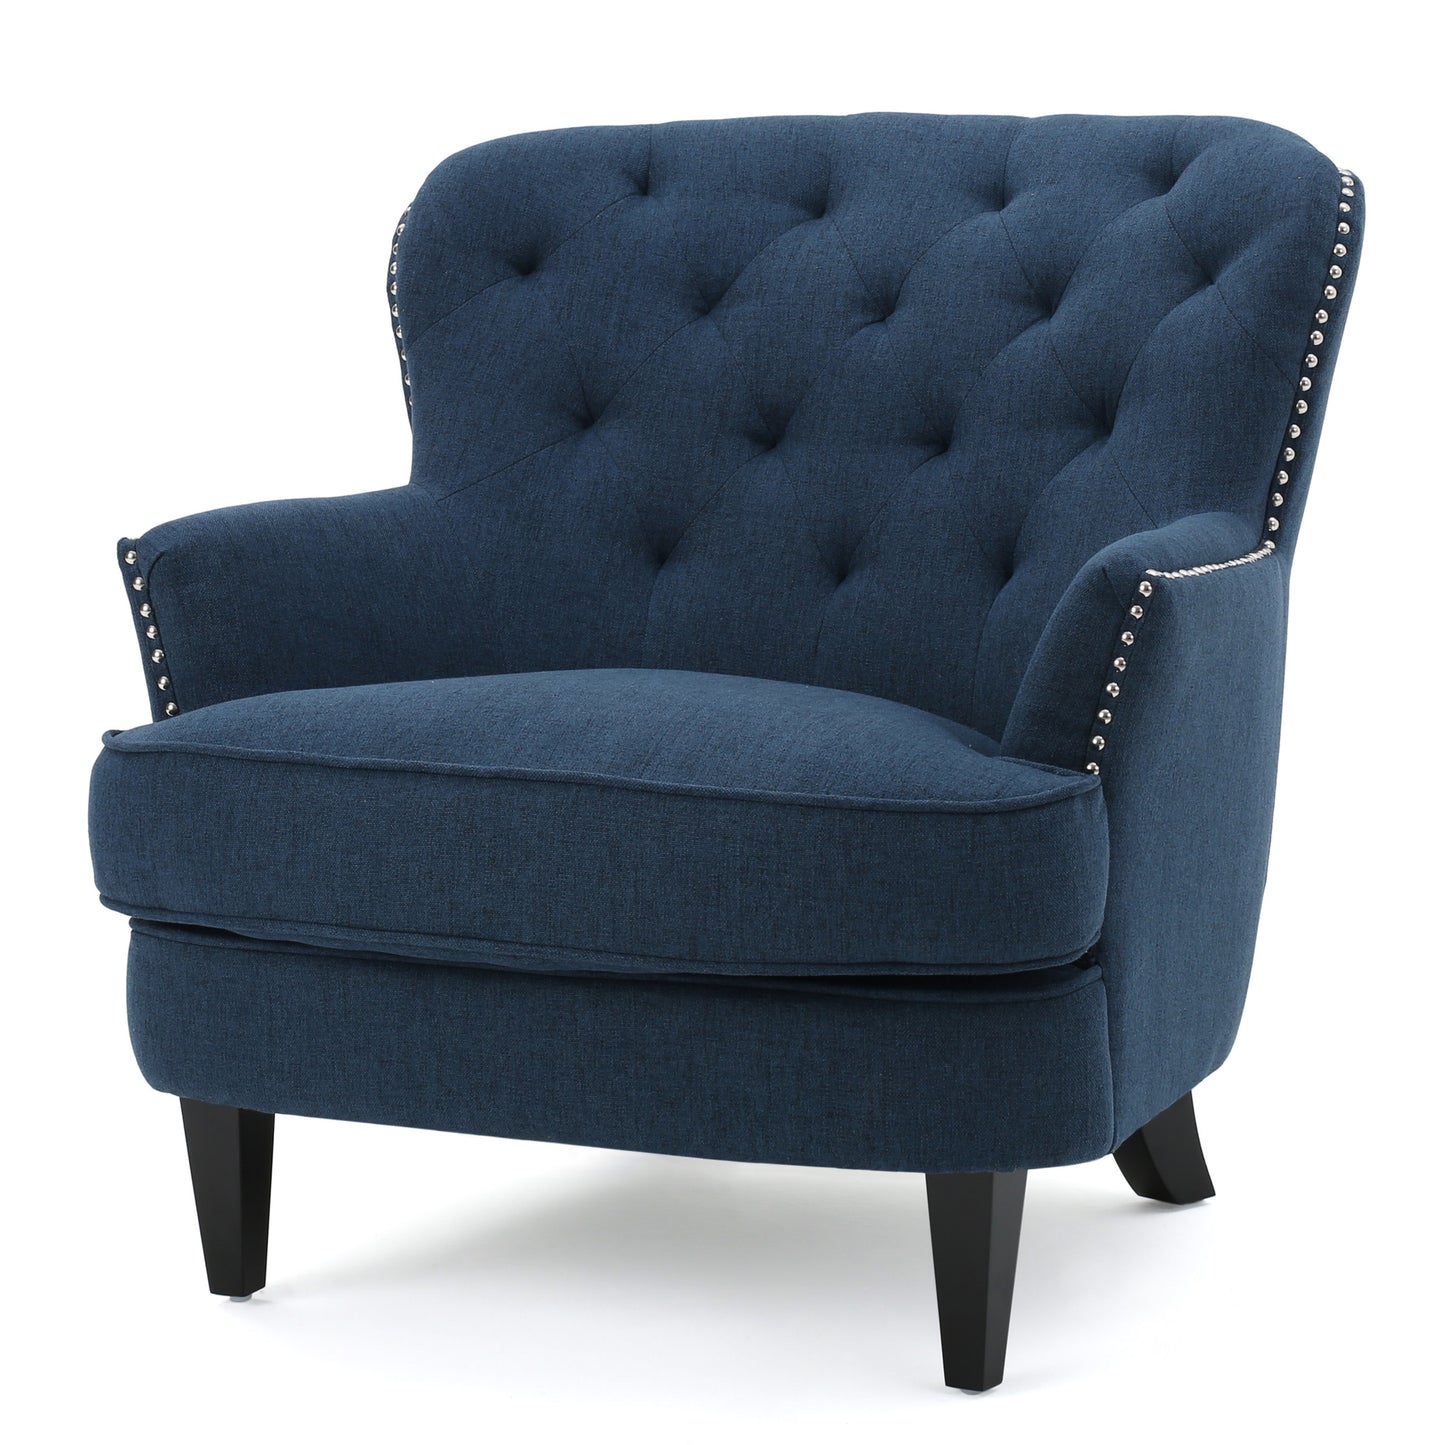 Aveton Tufted Fabric Club Chair